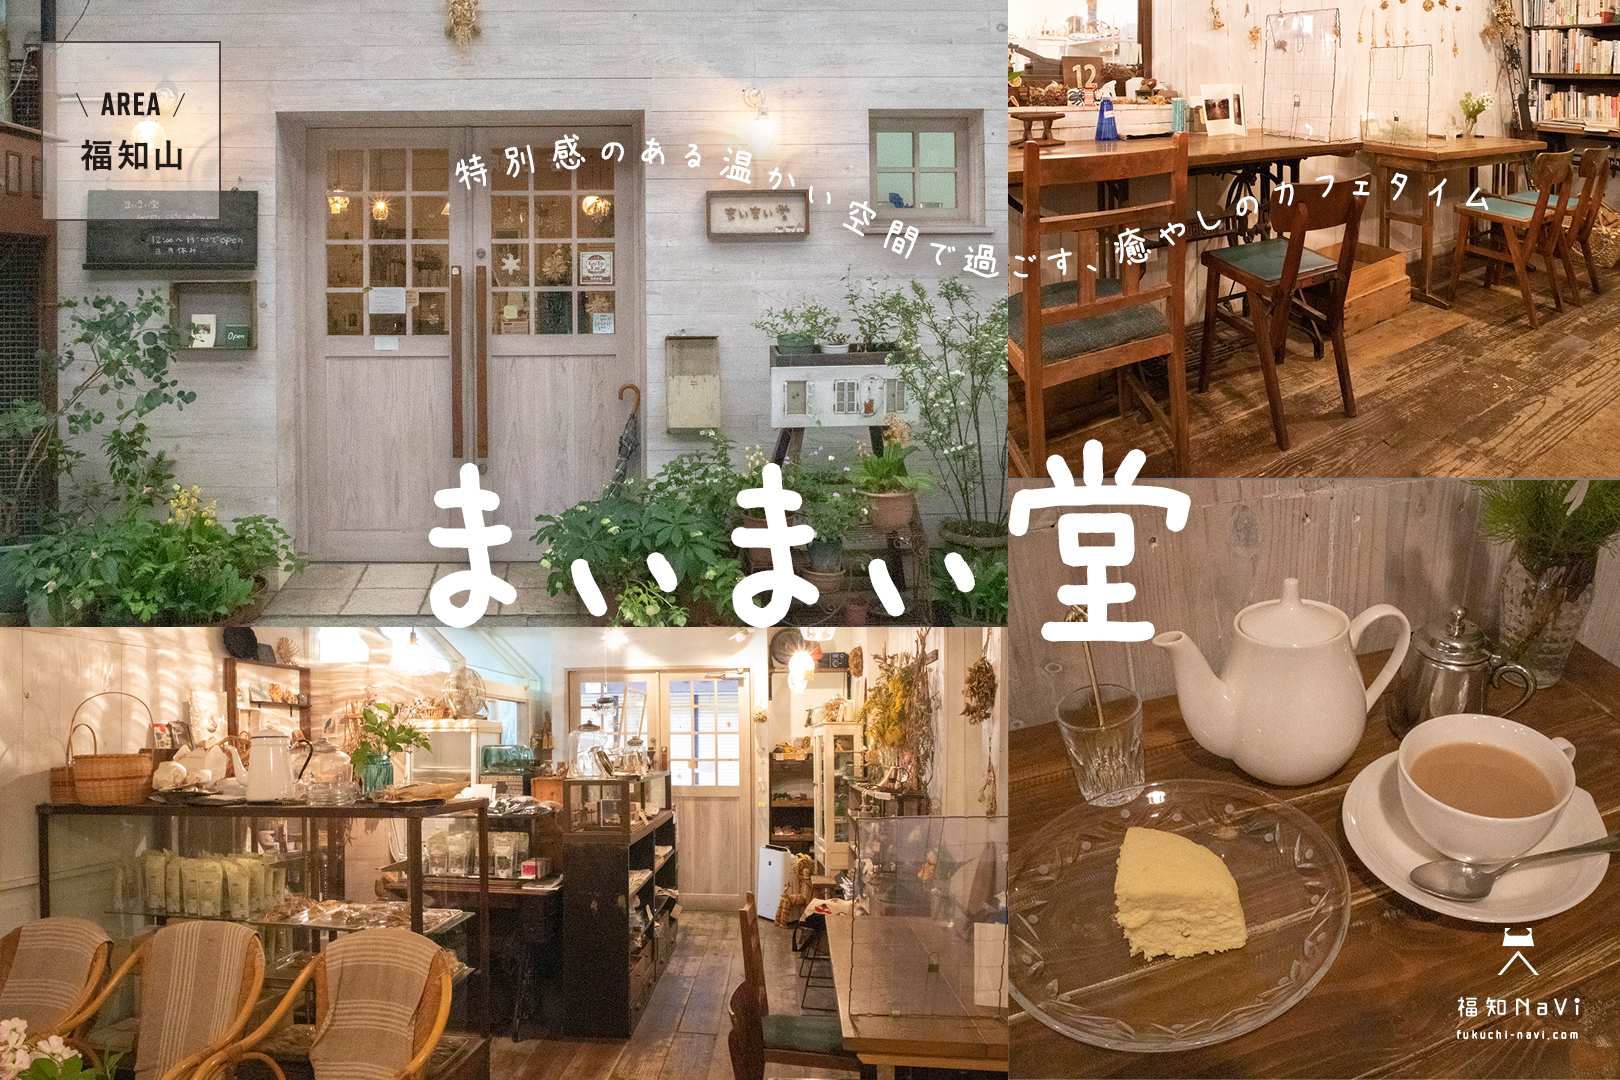 福知山 特別感が味わえる癒やしのカフェ まぃまぃ堂 雑貨もあり 福知navi 福知山 周辺のクチコミレポートブログ